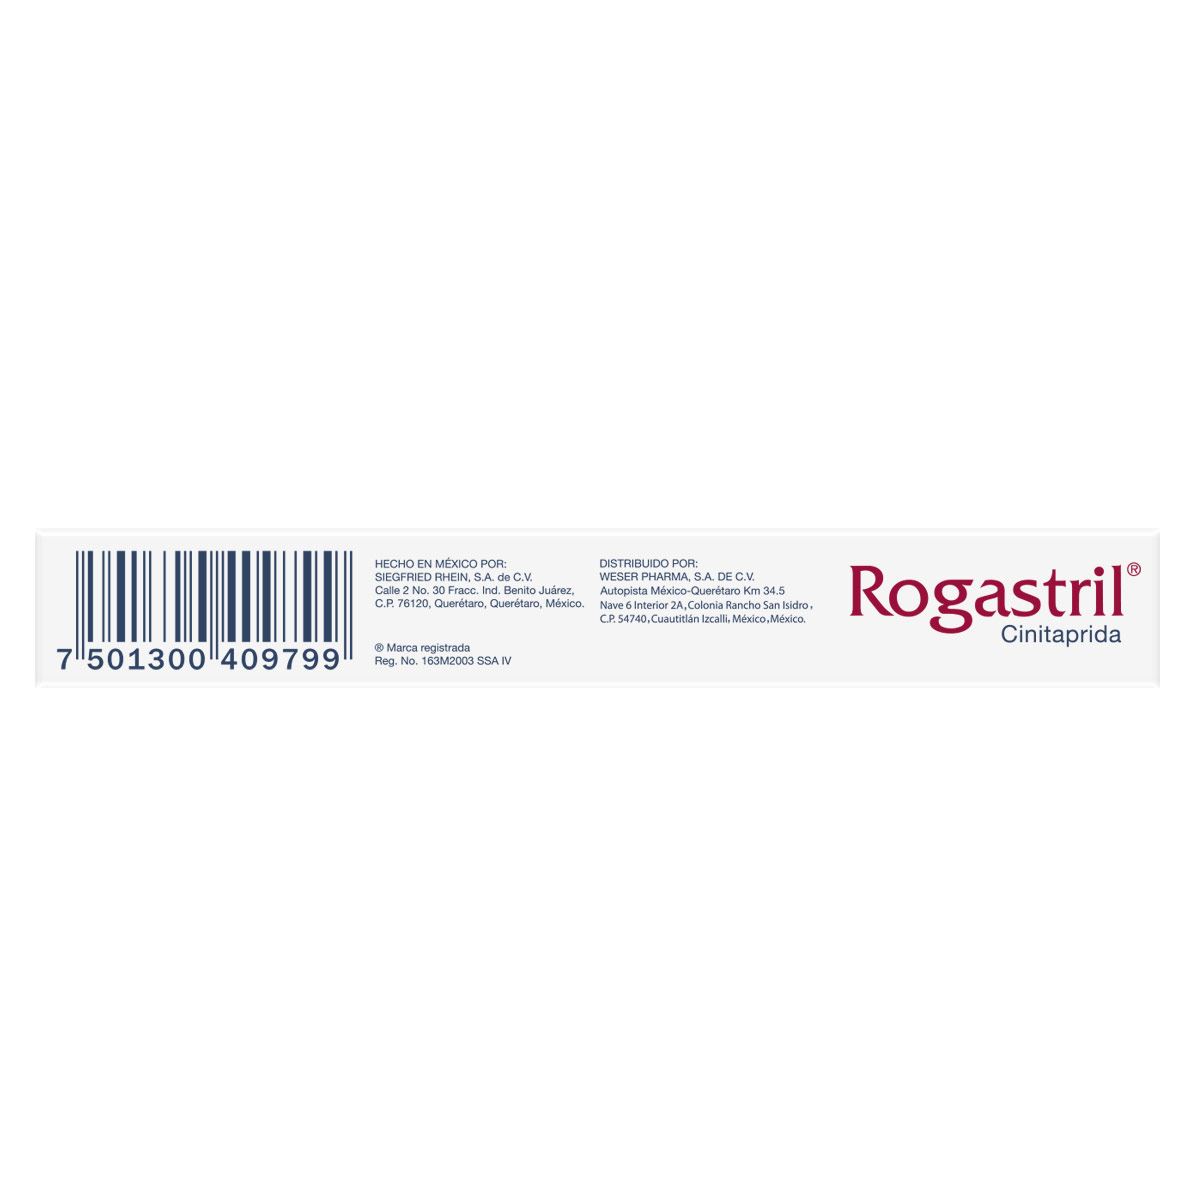 Rogastril 1 mg. Caja con 25 Comprimidos